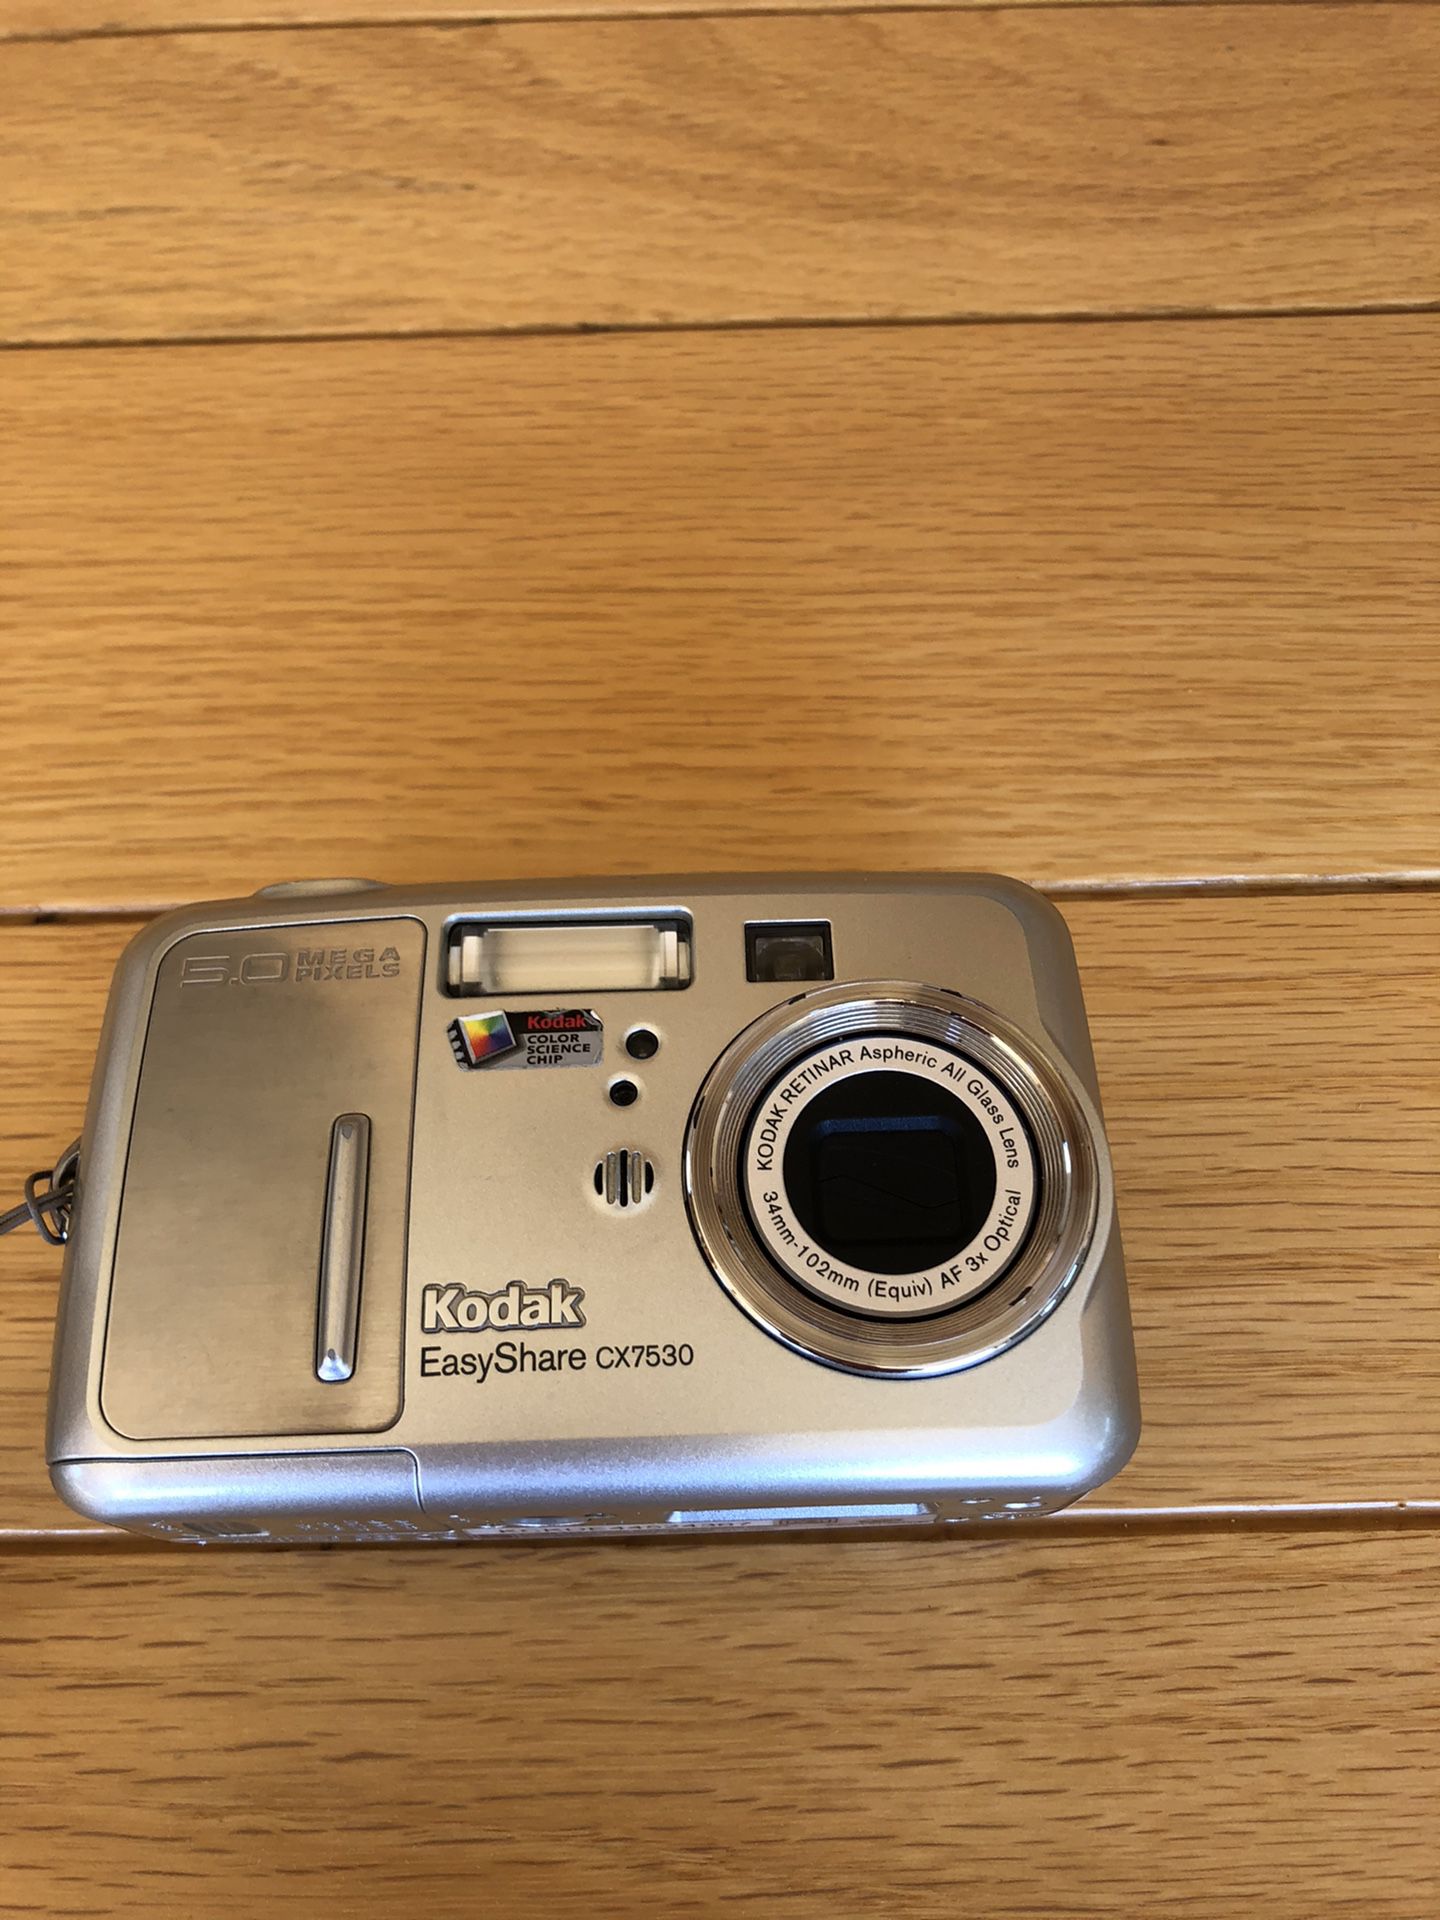 Kodak Easyshare CX7530 Digital Camera, Great Condition!